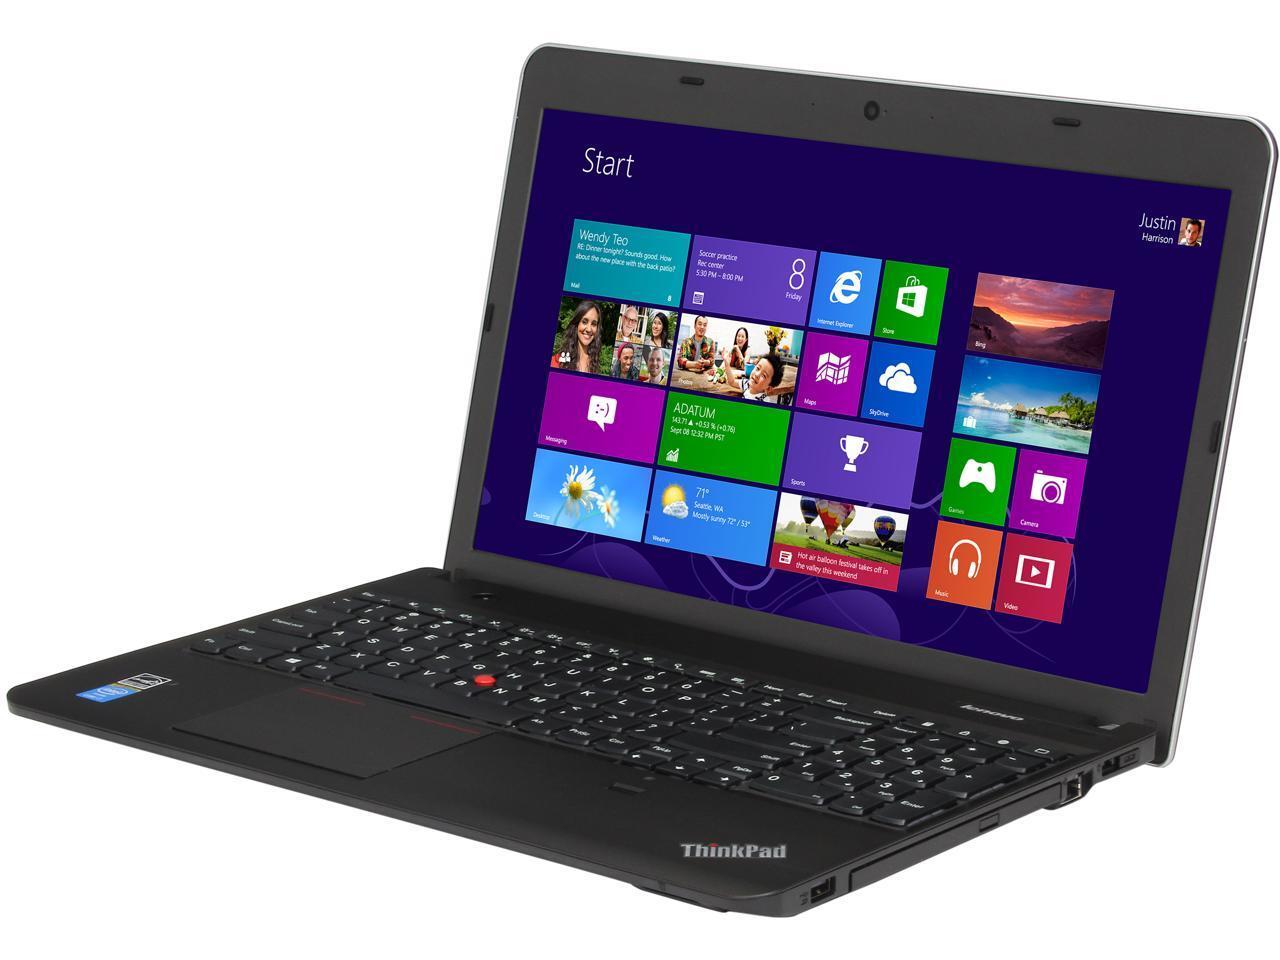 Lenovo ThinkPad E540 || i5-4200M | Ram 4GB / HDD 500GB | 15.6 inch HD